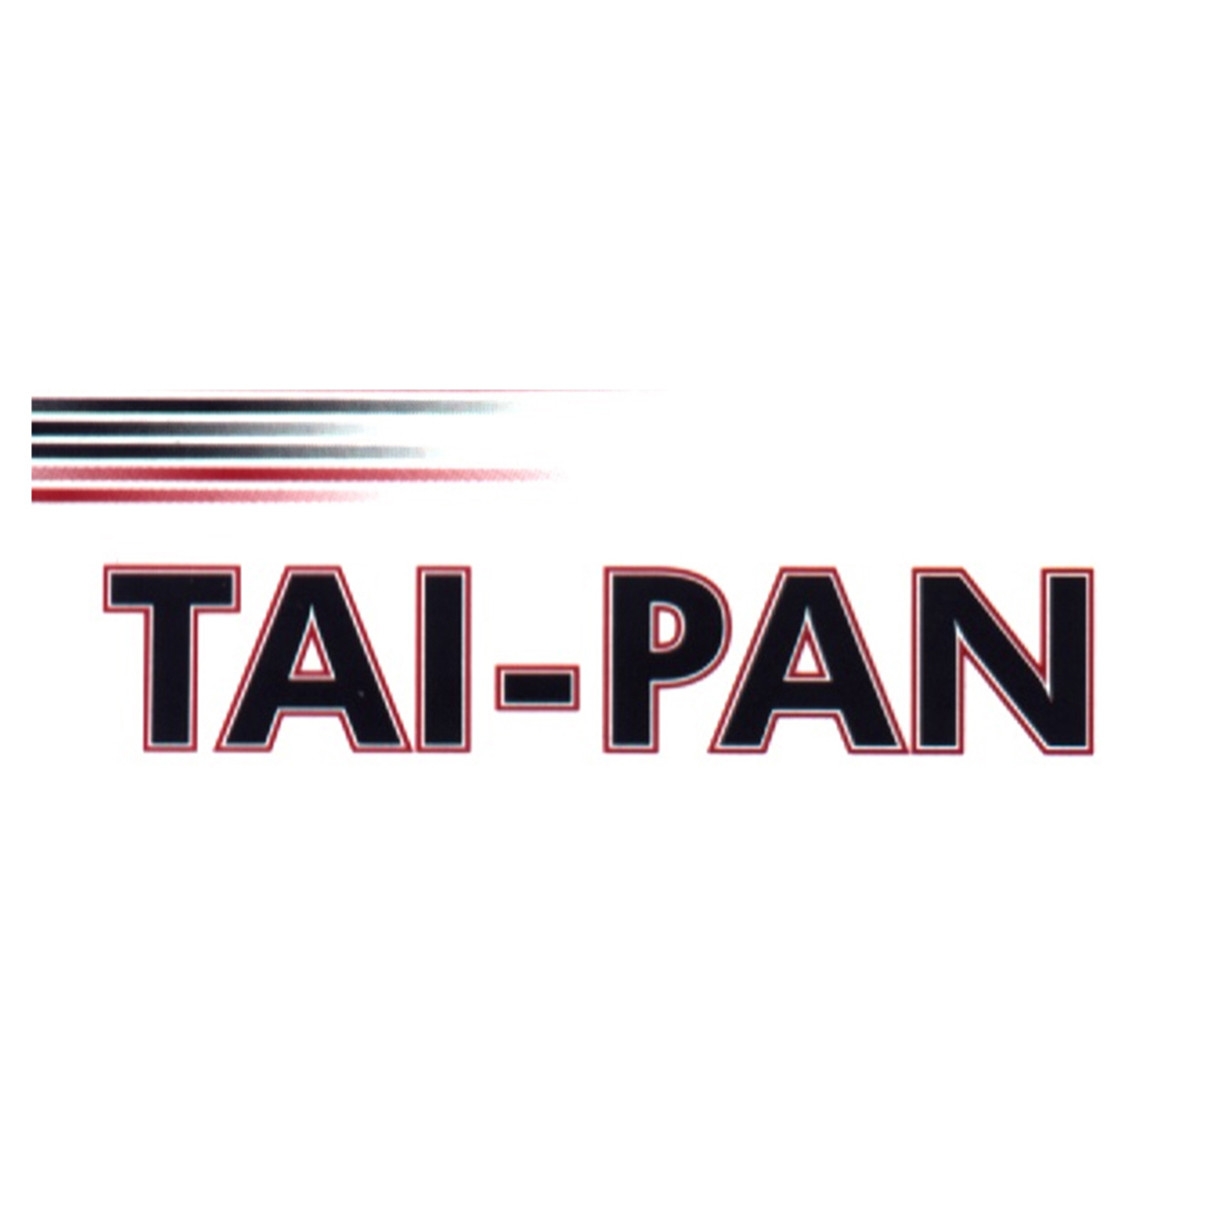 Tai-Pan